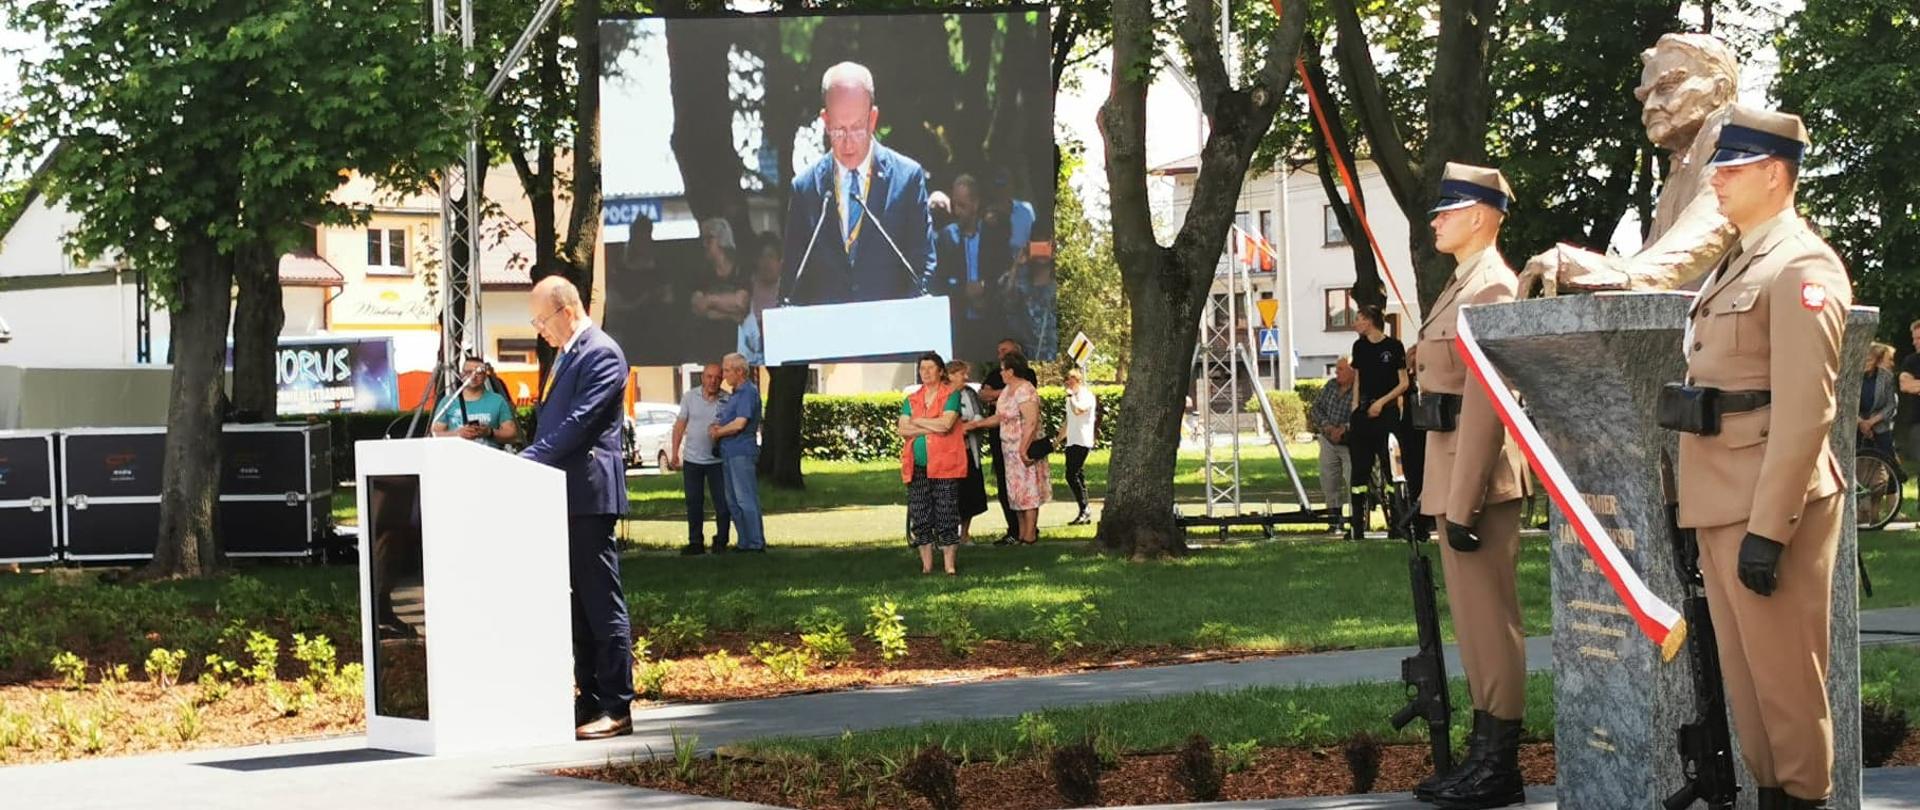 Na pierwszym planie znajduje się pomnik Premiera Jana Olszewskiego, przy którym stoi warta honorowa Wojska Polskiego. Po lewej stronie zdjęcia, za mównicą stoi ubrany w granatowy garnitur mężczyzna, który odczytuje list. W tle znajduje się telebim. 